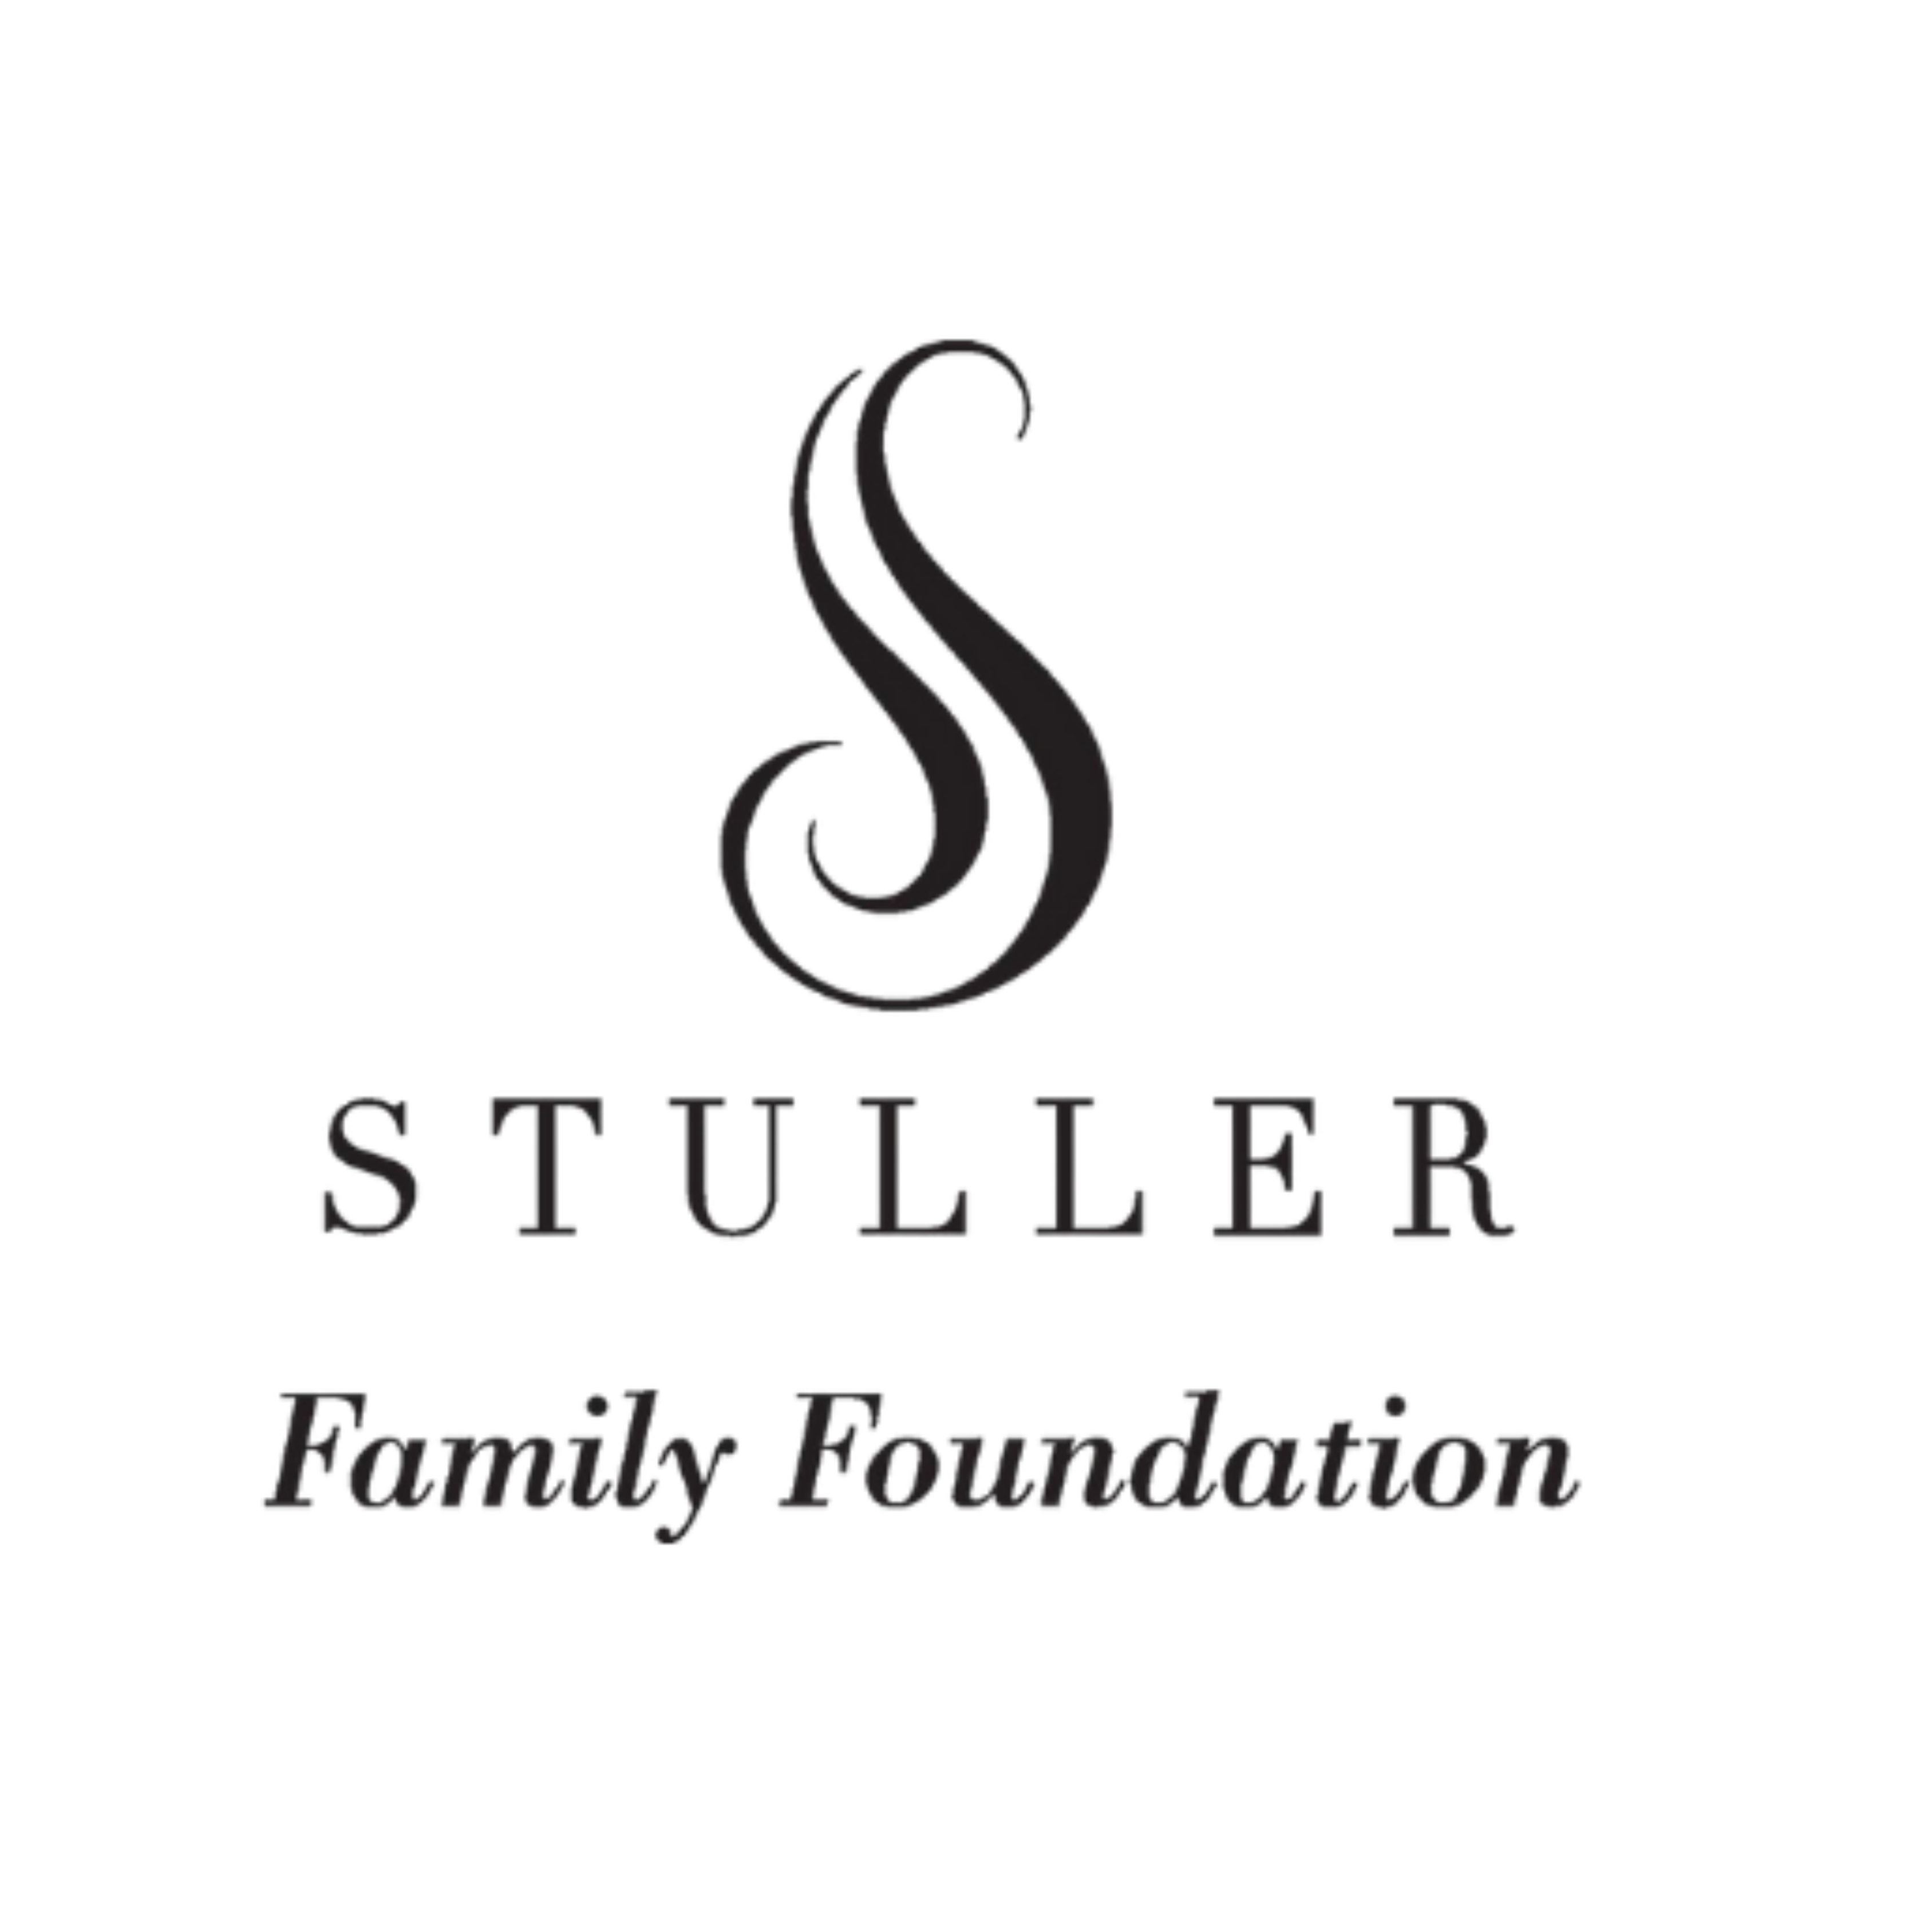 Stuller Family Foundation 